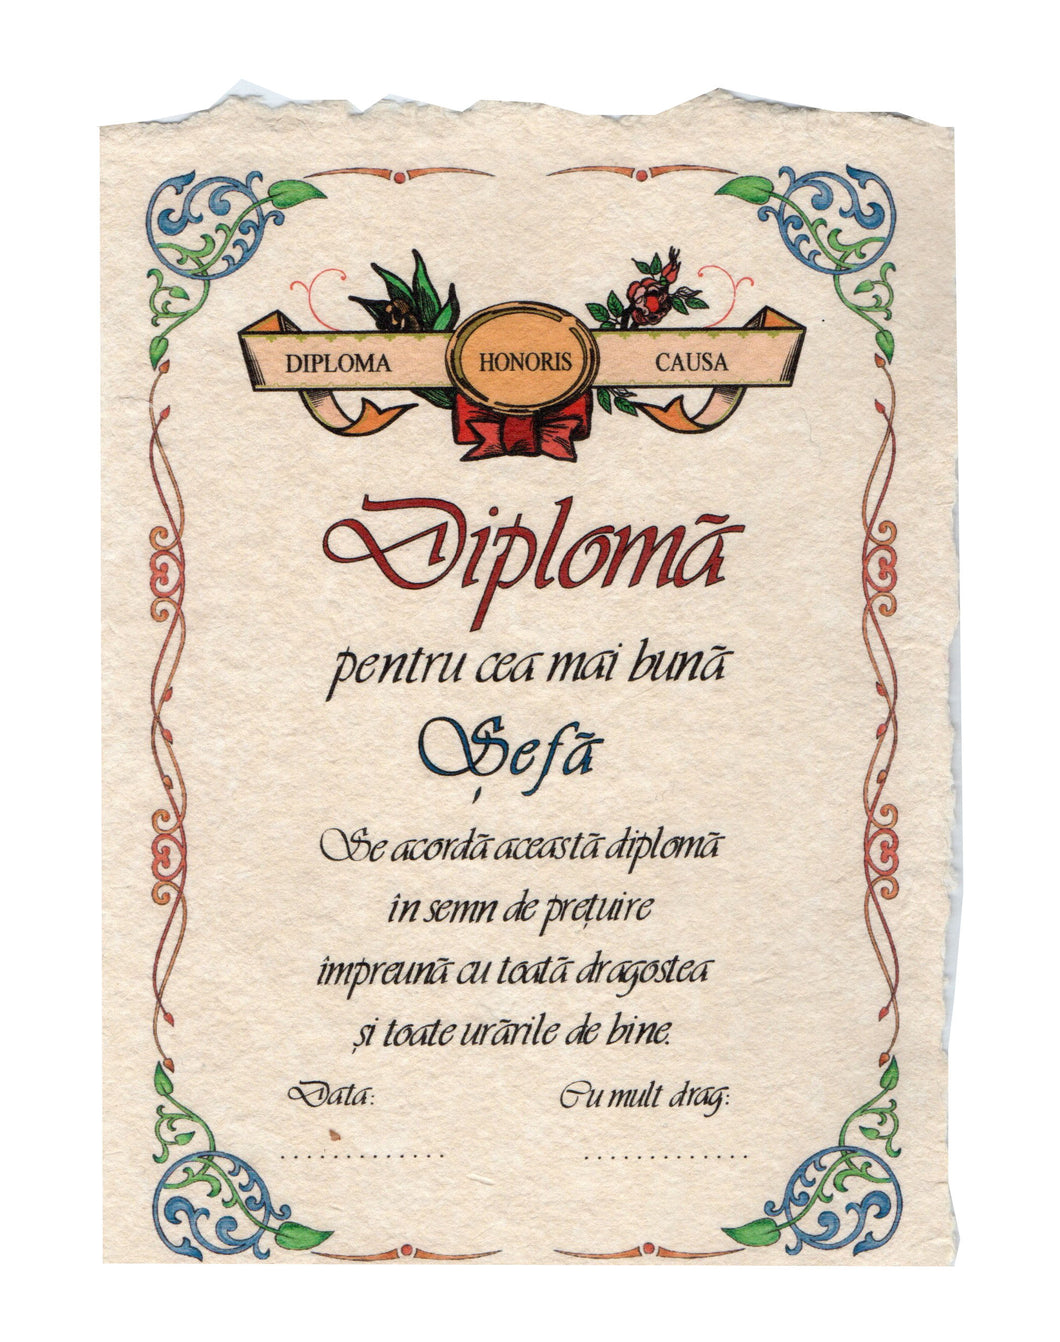 Diploma Personalizata Pergament Cadou cu Mesaj Dedicatie pentru Cea Mai Buna Cea Mai Buna Sefa